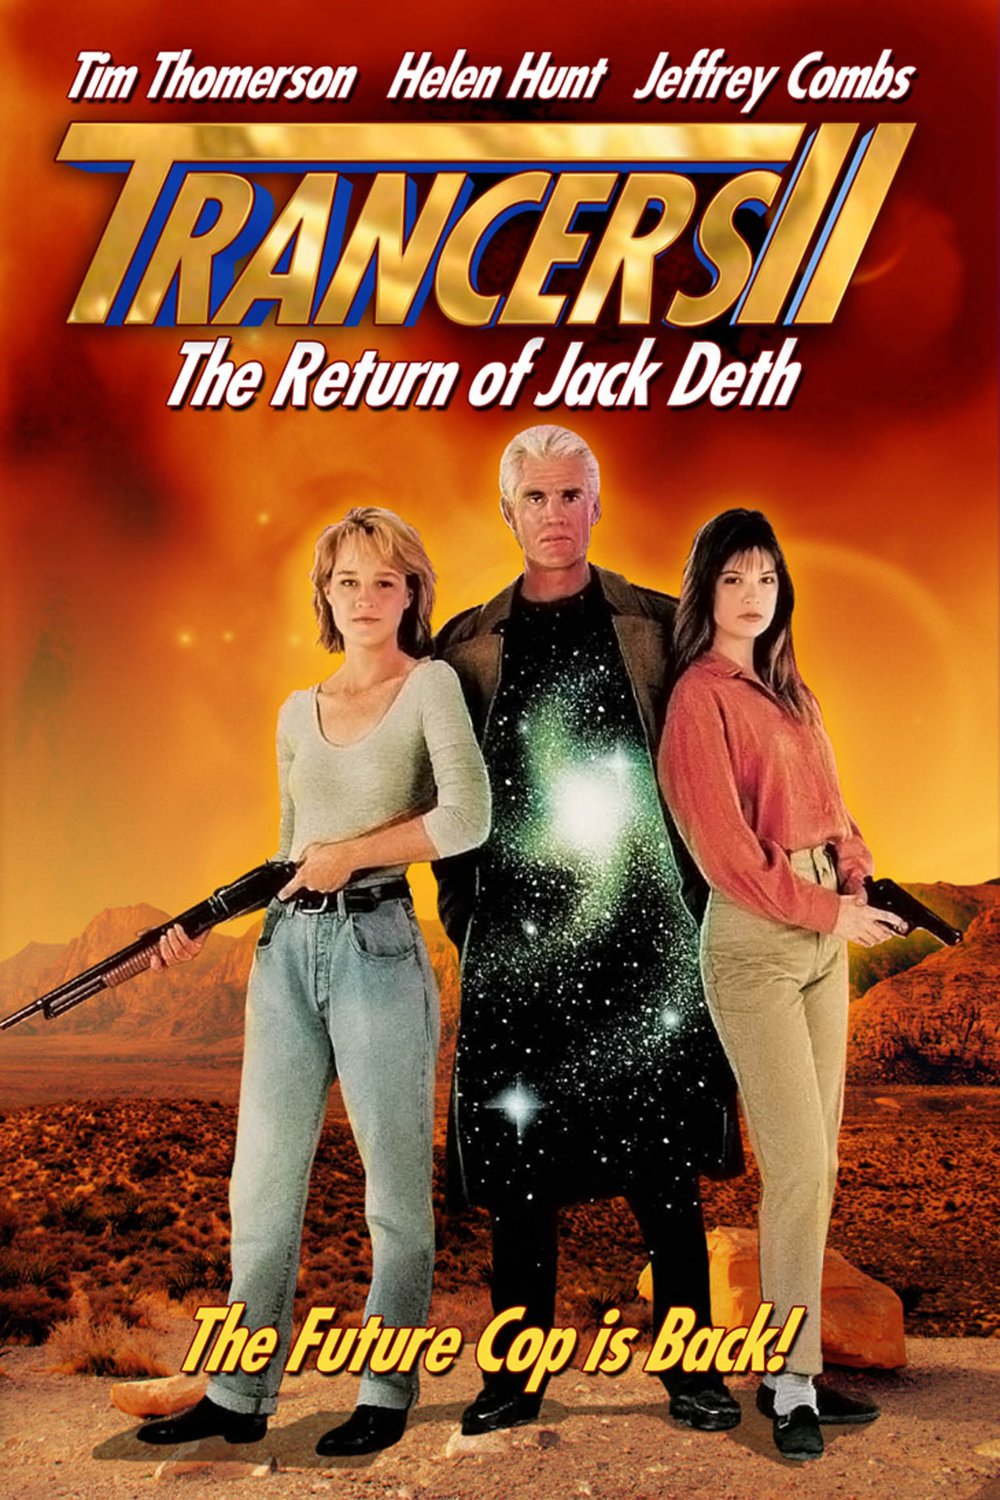 L'affiche du film Trancers II: The Return of Jack Deth